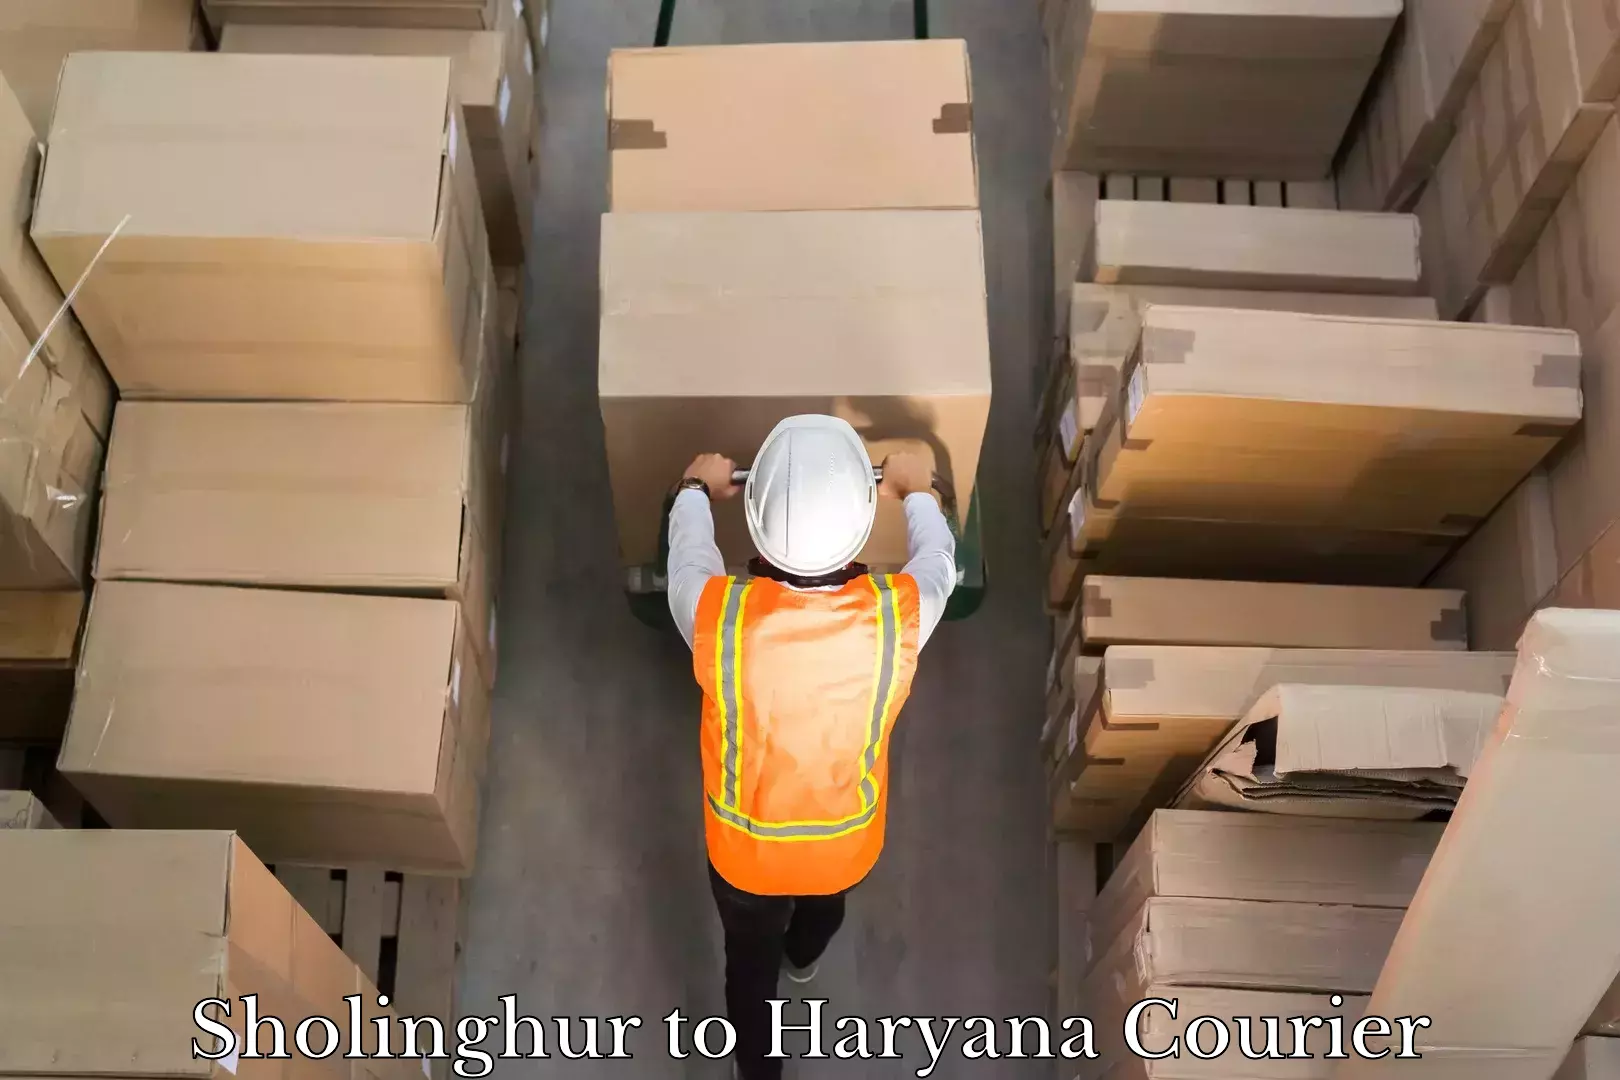 Express logistics providers Sholinghur to Haryana